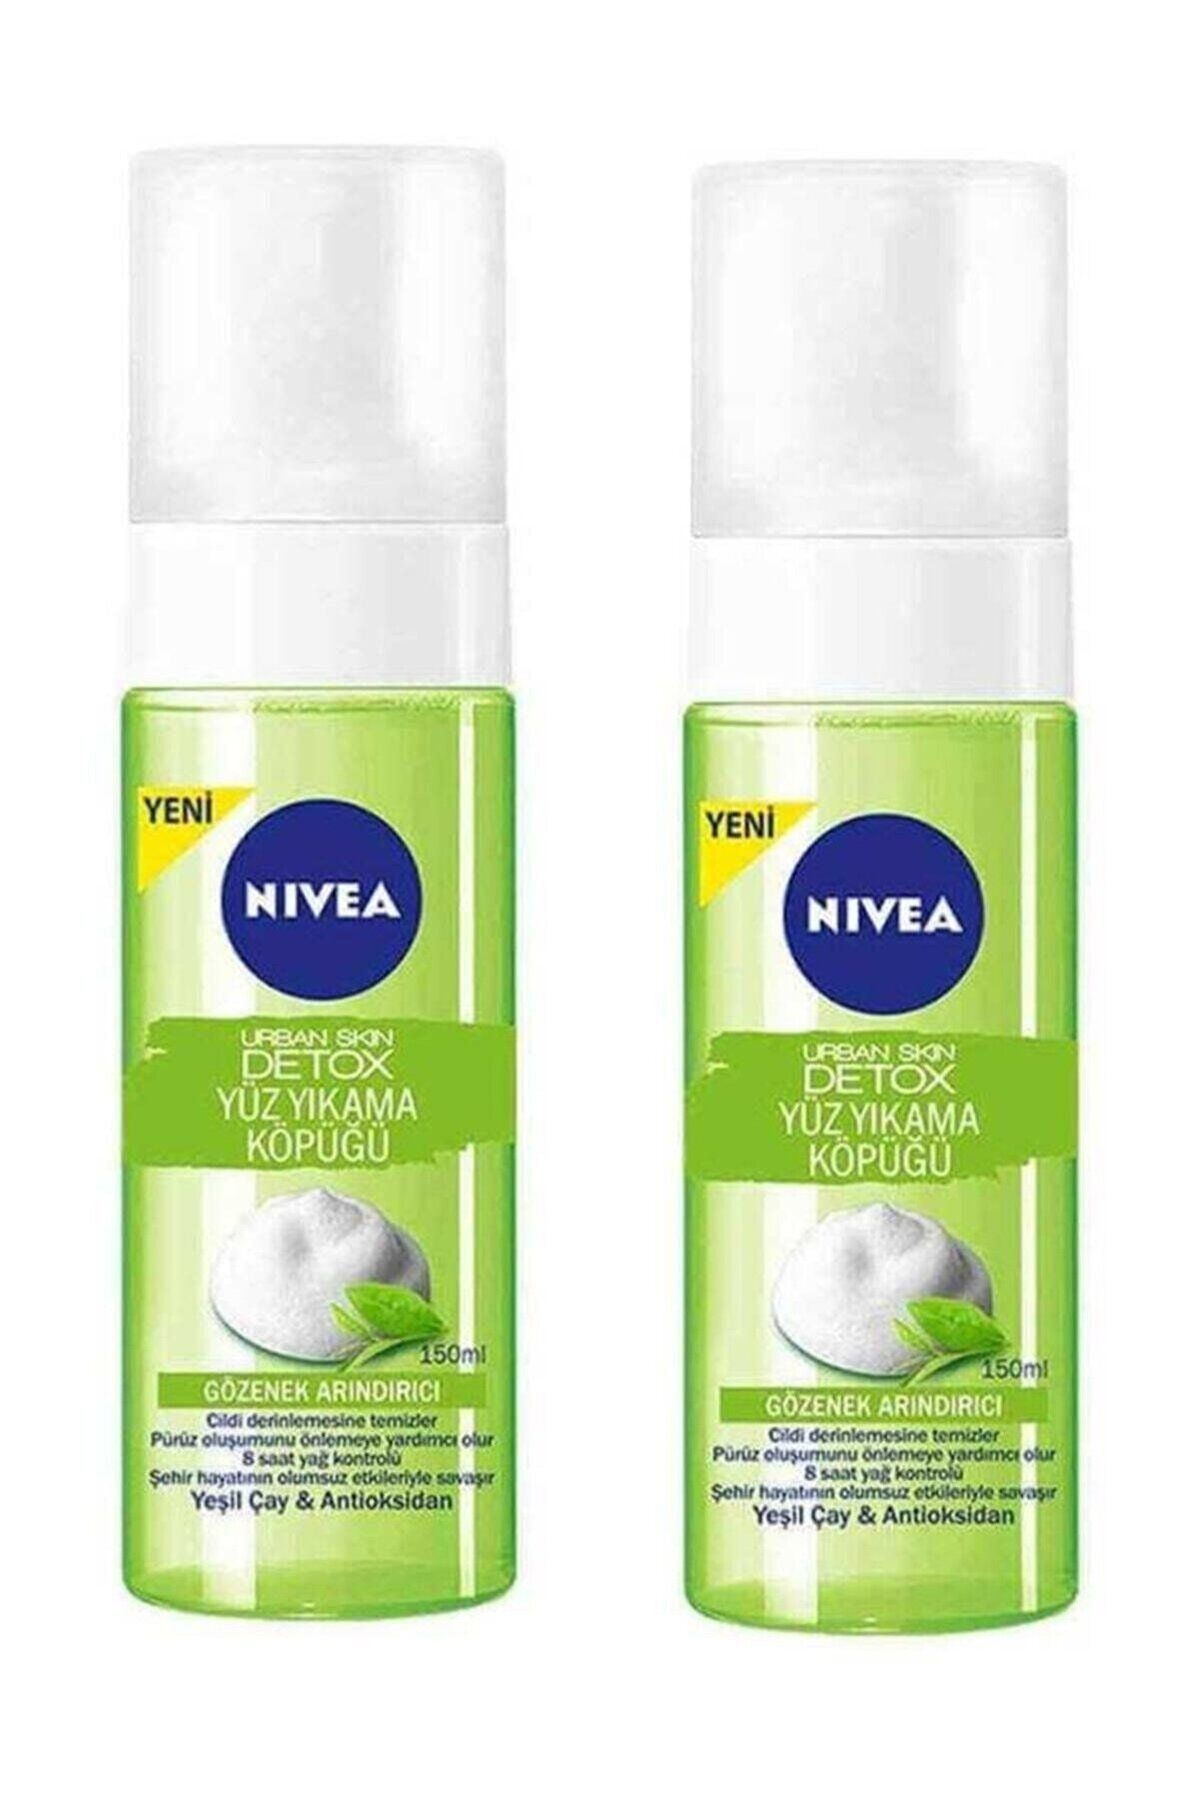 NIVEA Urban Skin Detox Gözenek Arındırıcı Yüz Yıkama Köpüğü 150ml 2 Adet